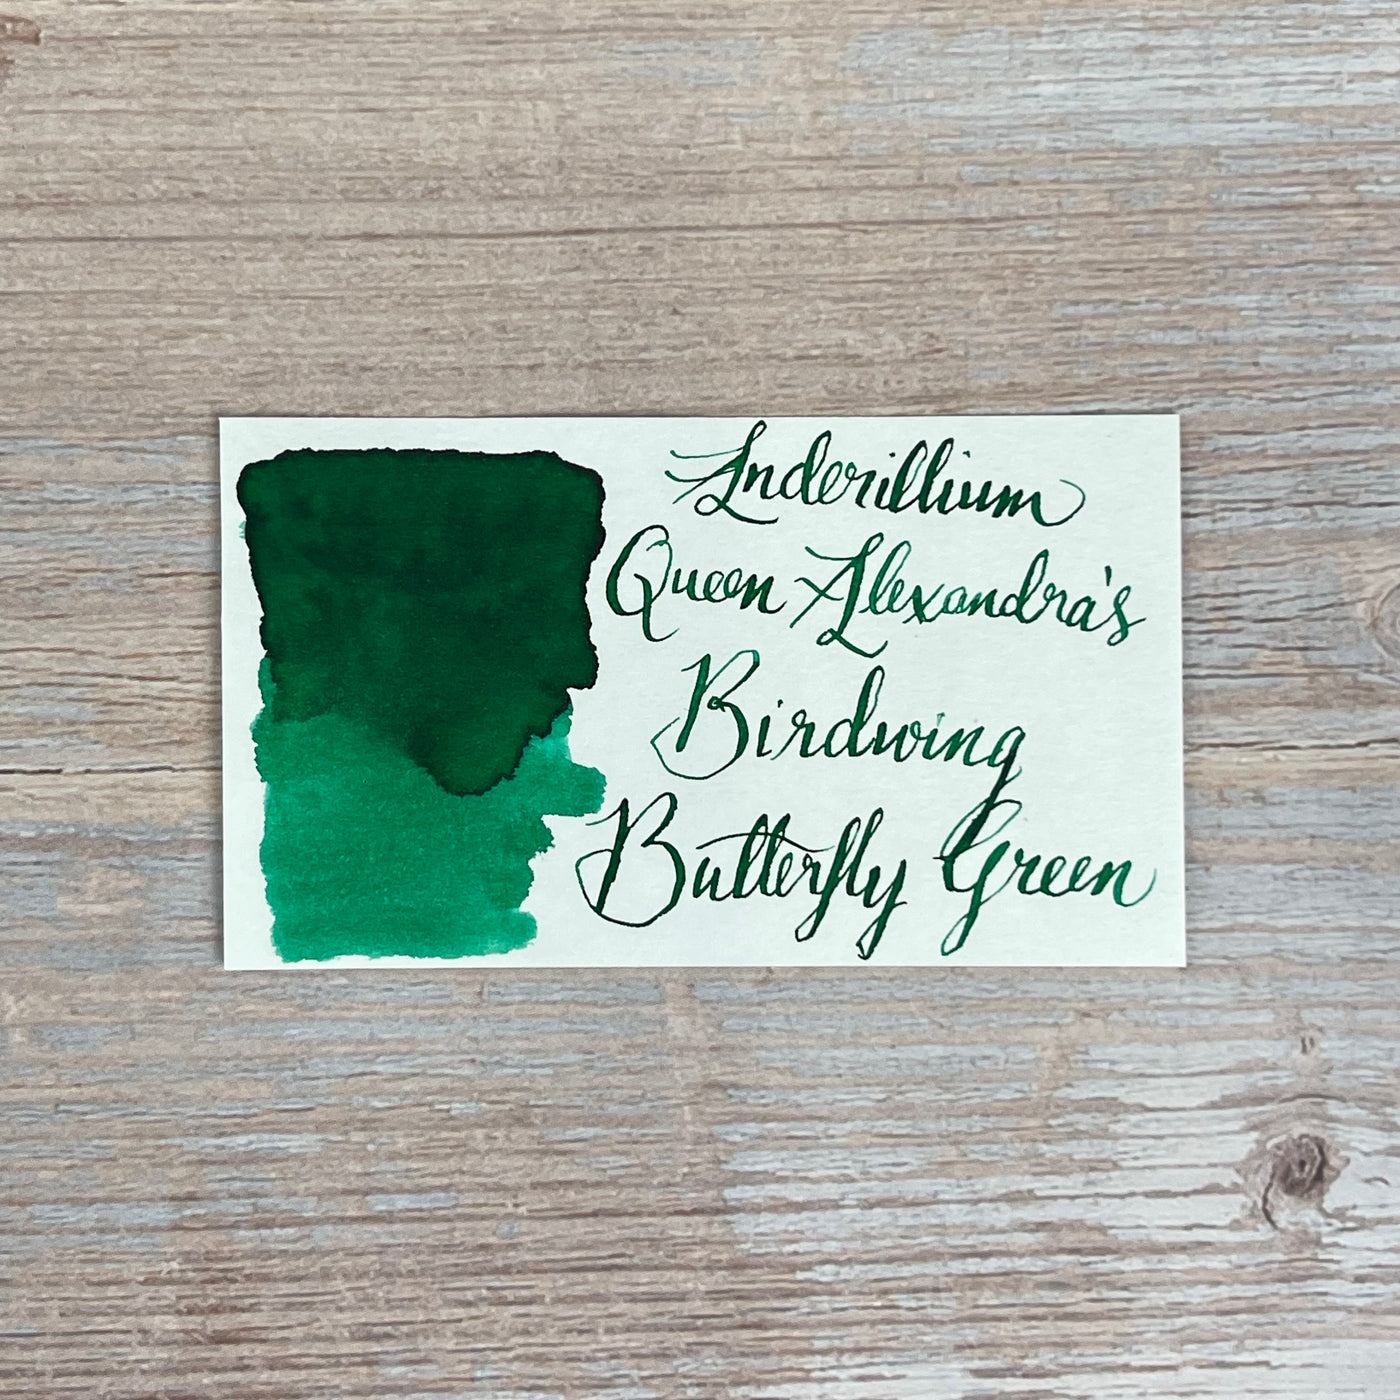 Anderillium Queen Alexandra's Birdwing Butterfly Green - 1.5 Oz Bottled Ink